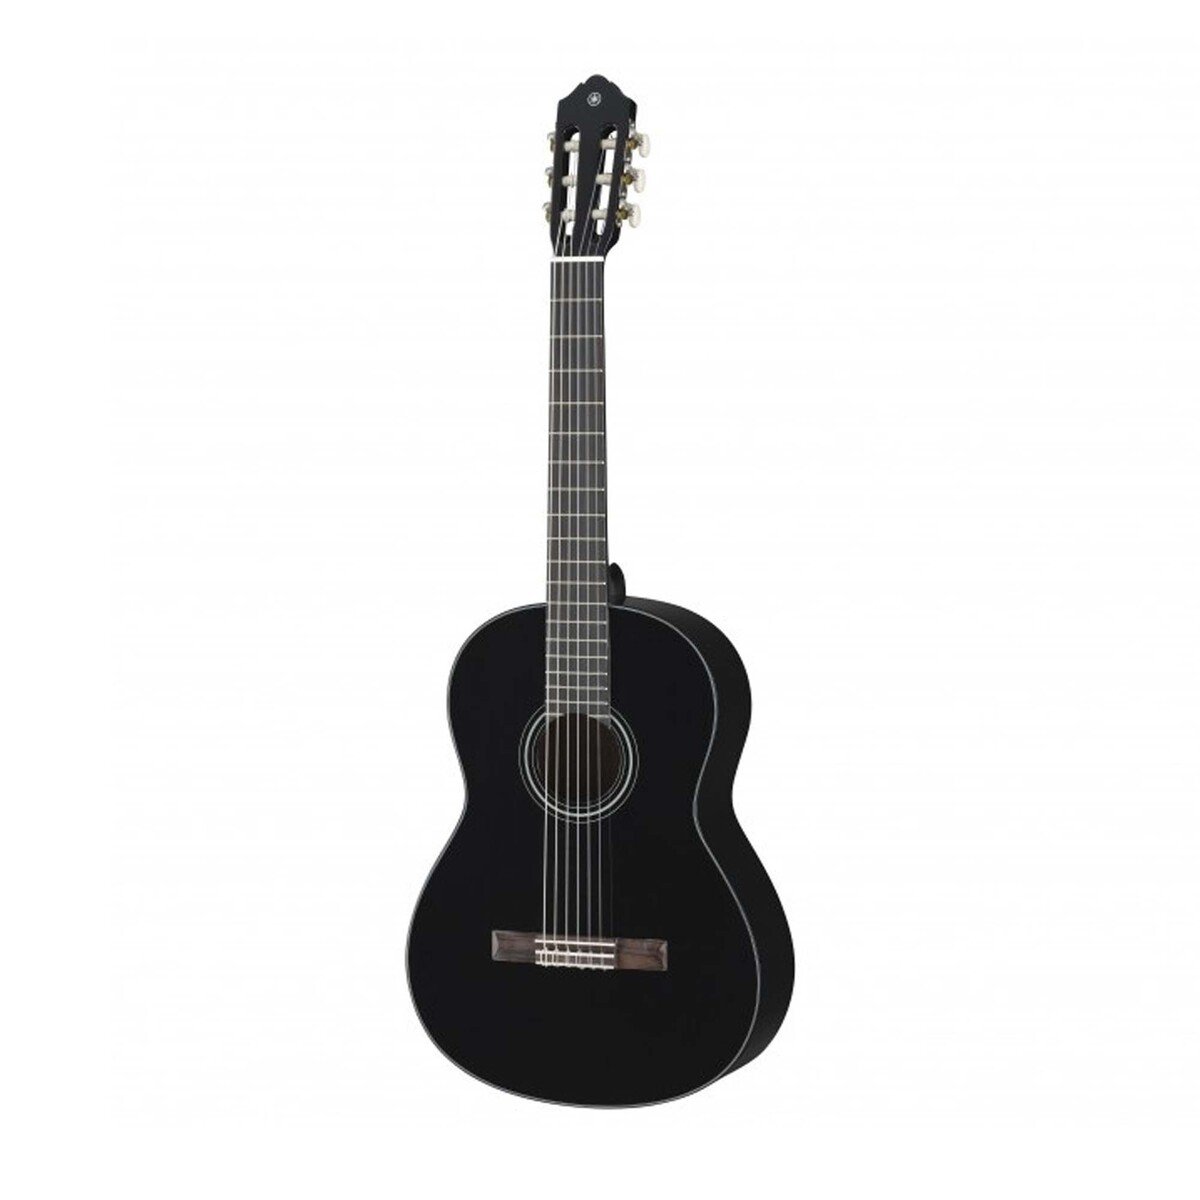 Yamaha C40 Classical Guitar BL-Black